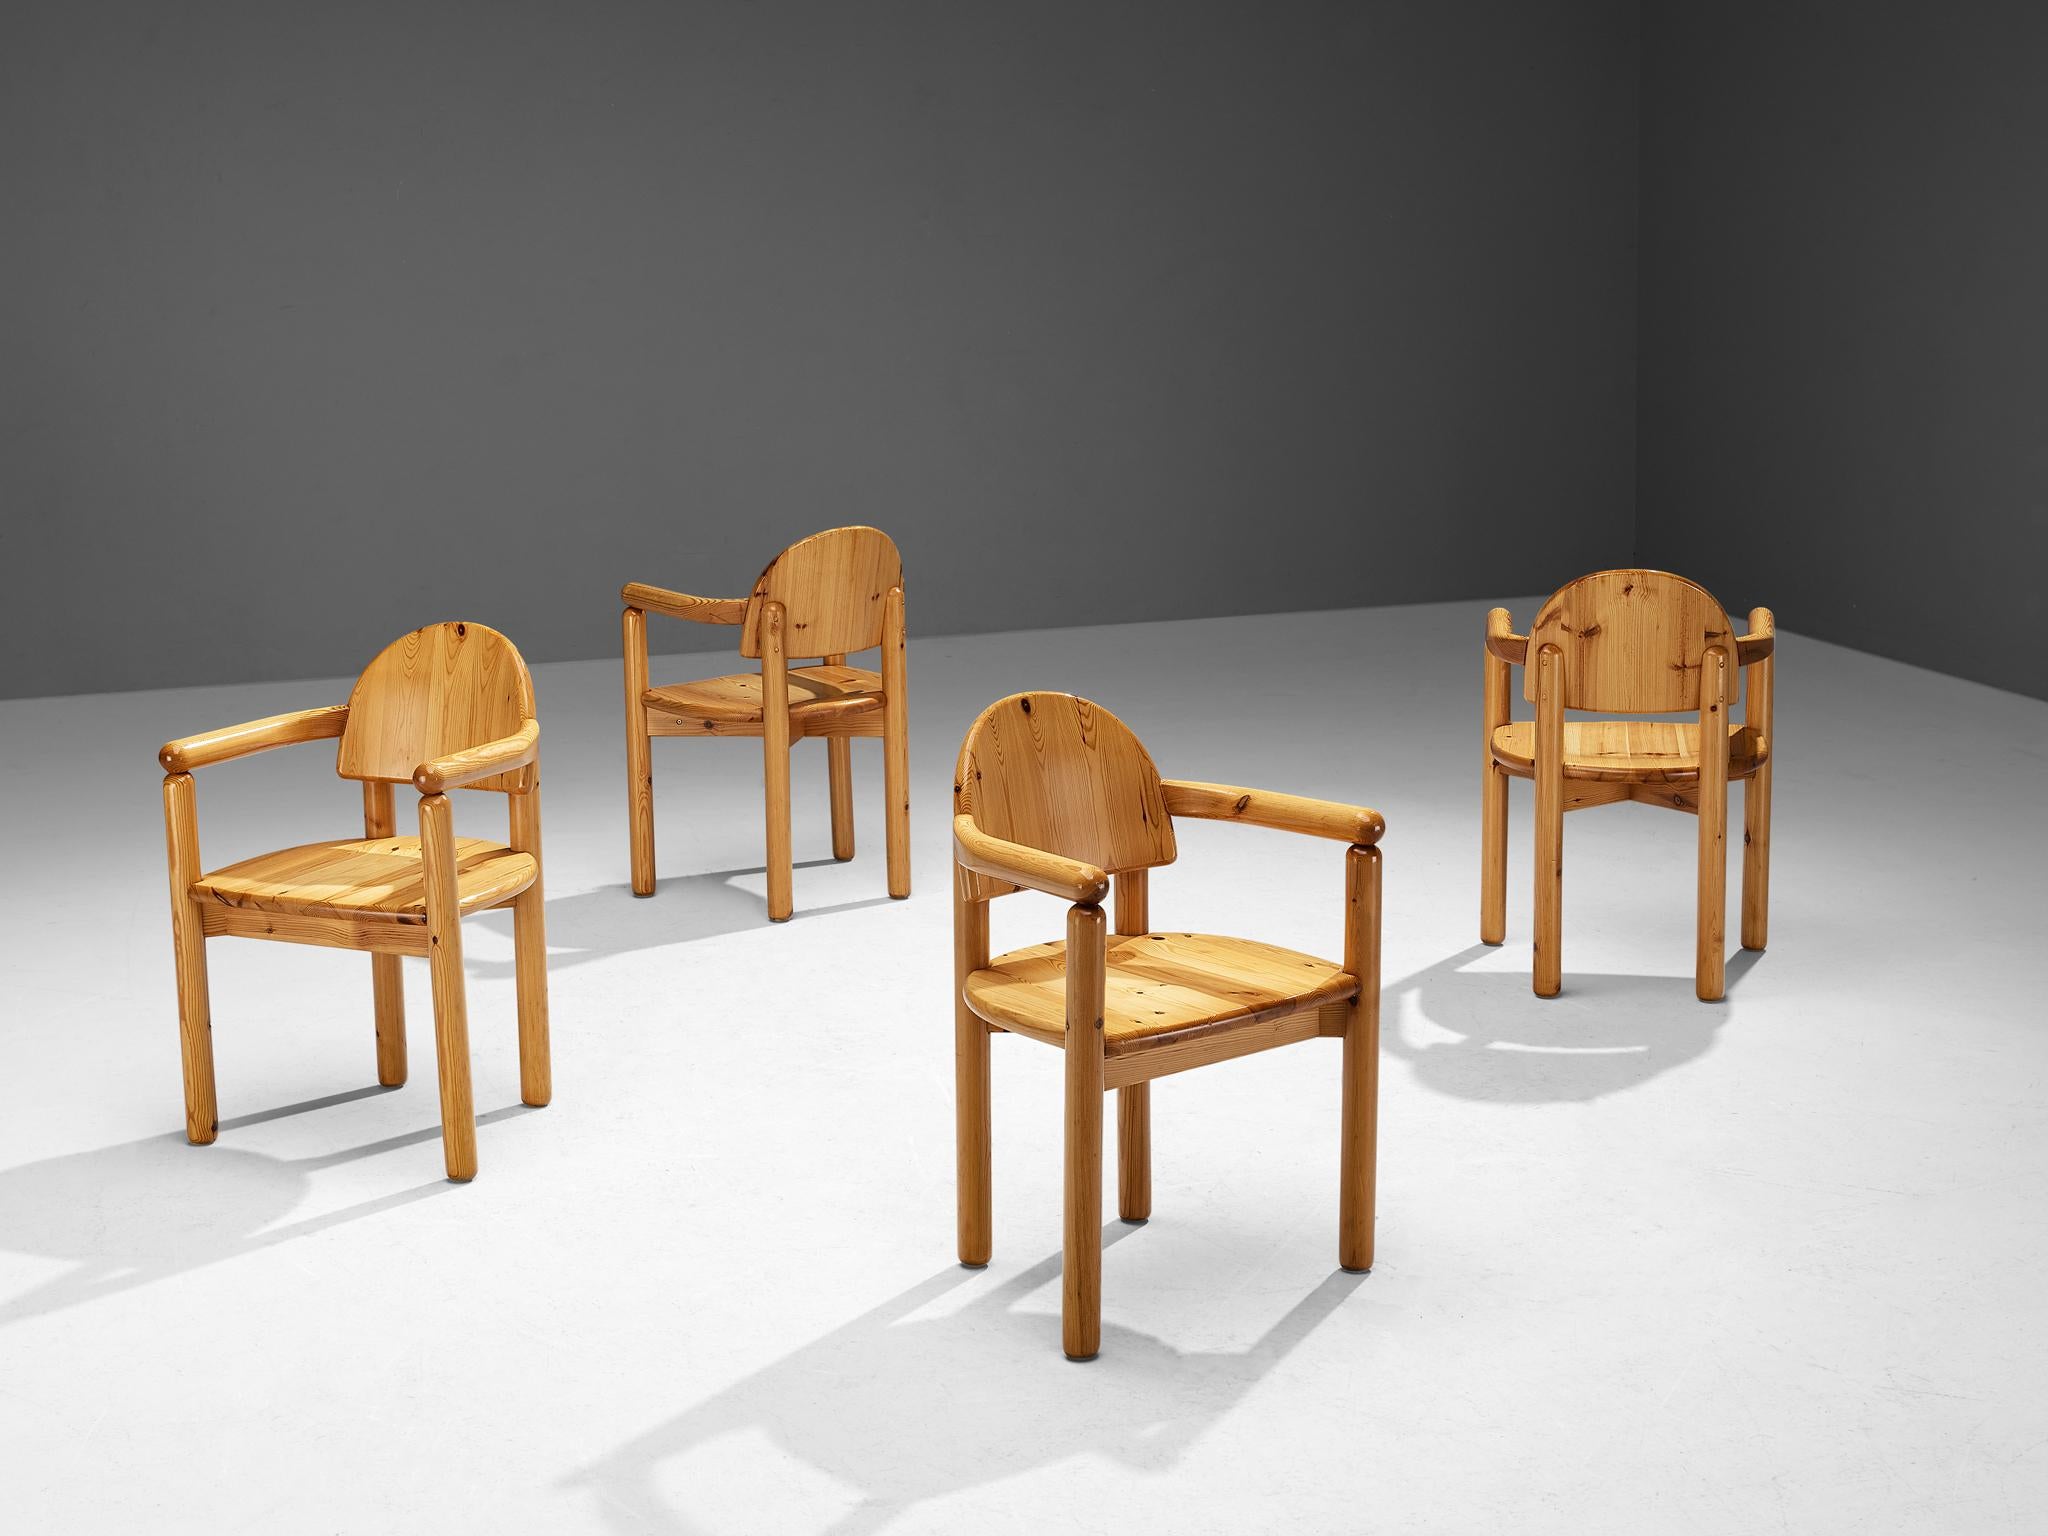 Ensemble de quatre fauteuils, pin, Danemark, années 1970.
 
Cet ensemble de quatre fauteuils danois présente de multiples caractéristiques. Le grain vif du bois de pin chaud contribue à l'expressivité naturelle des chaises. Sans coussin, l'assise